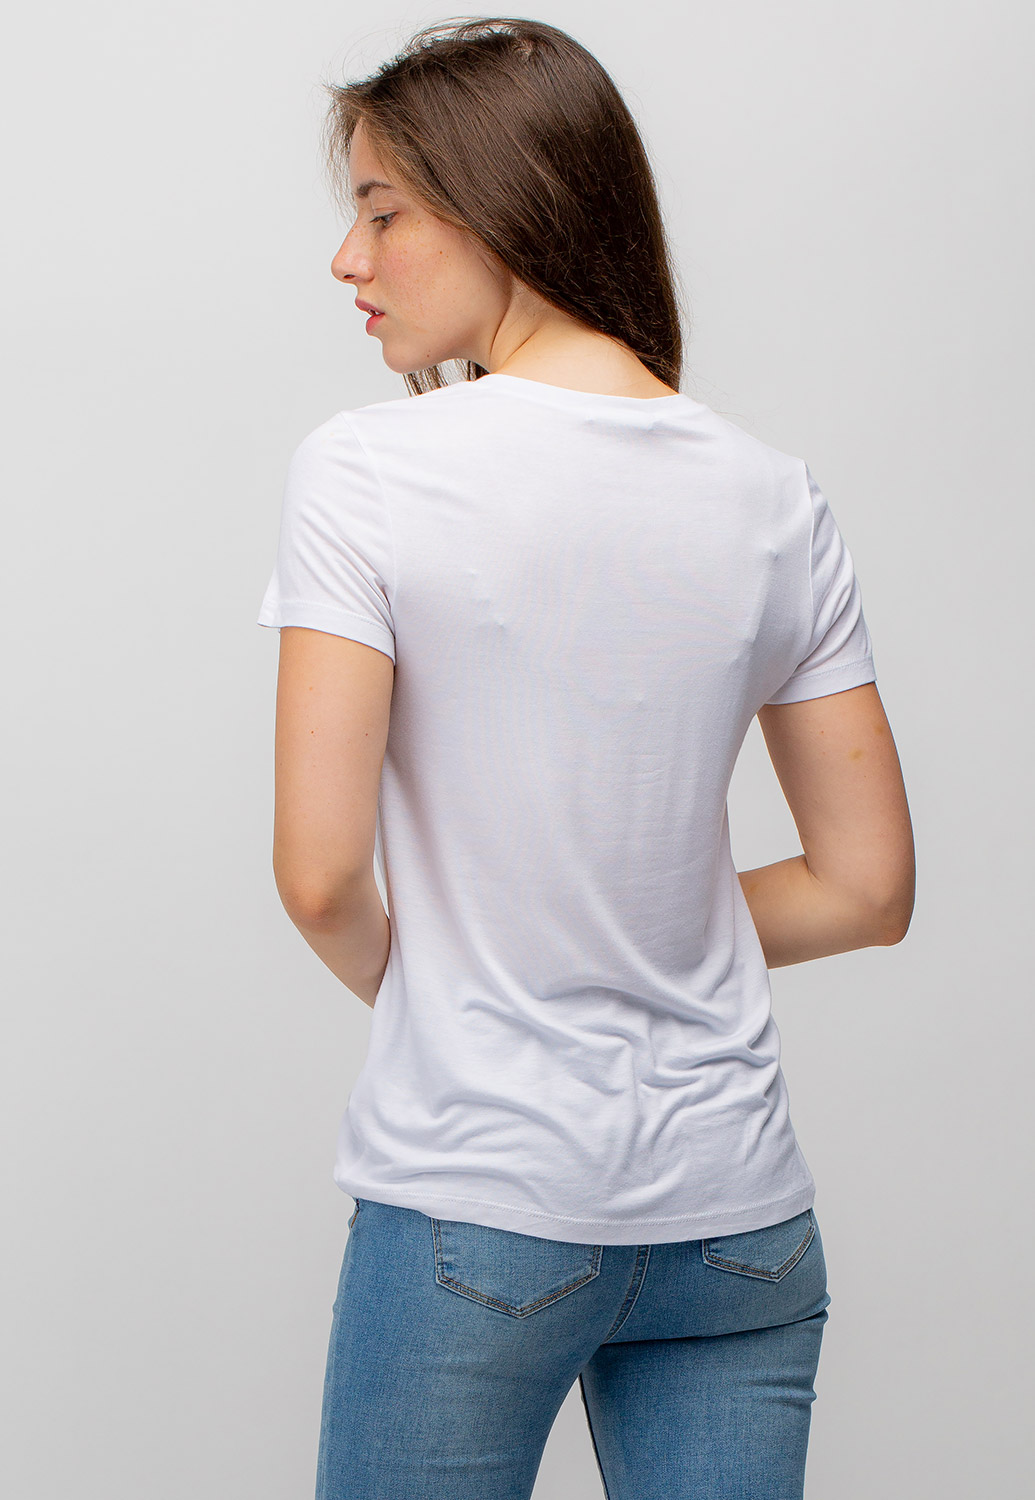 Basic V-Neck Pocket T Shirts